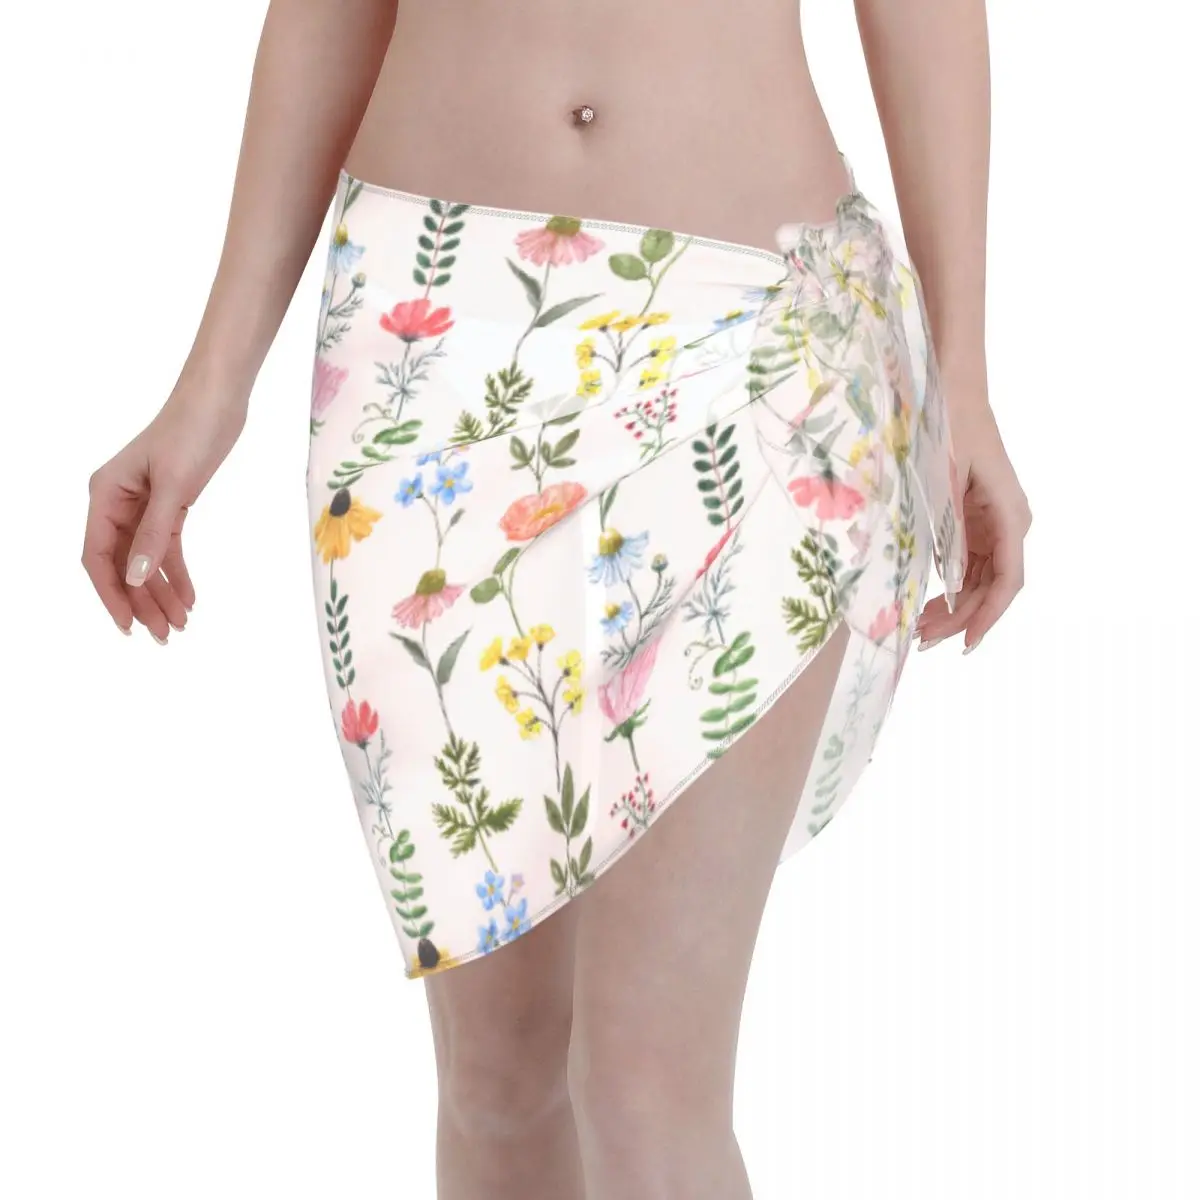 

Sexy Women Wildflowers Flower Perspective Pareo Swimwear Cover Ups Colorful Beautiful Bikini Beach Cover Ups Short Skirt